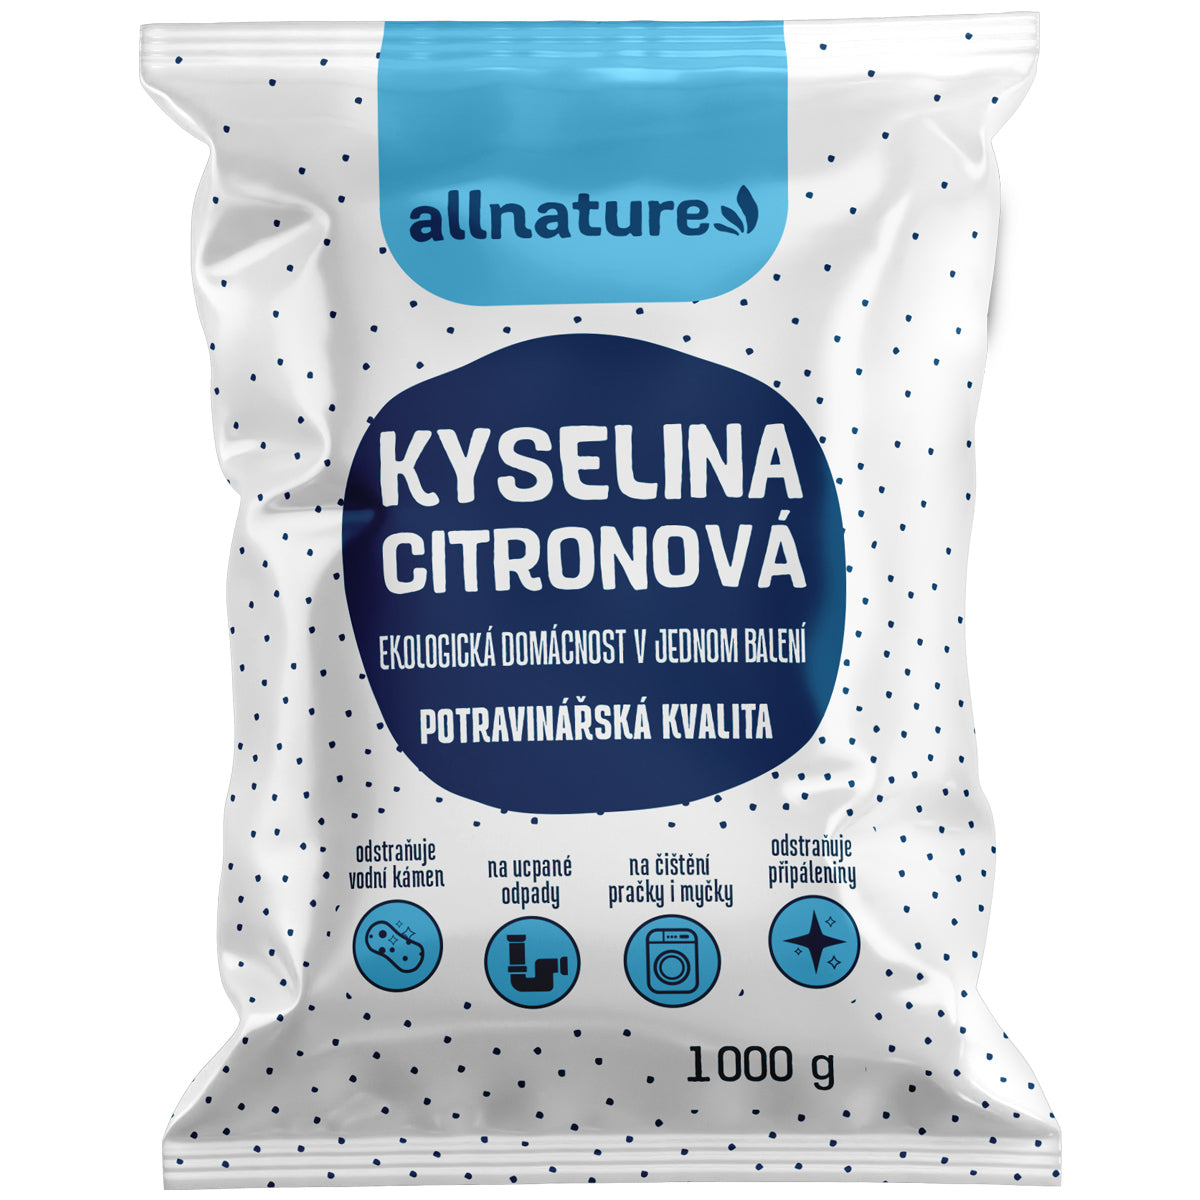 Allnature Kyselina citronová (1 kg) - II. jakost - potravinářská kvalita